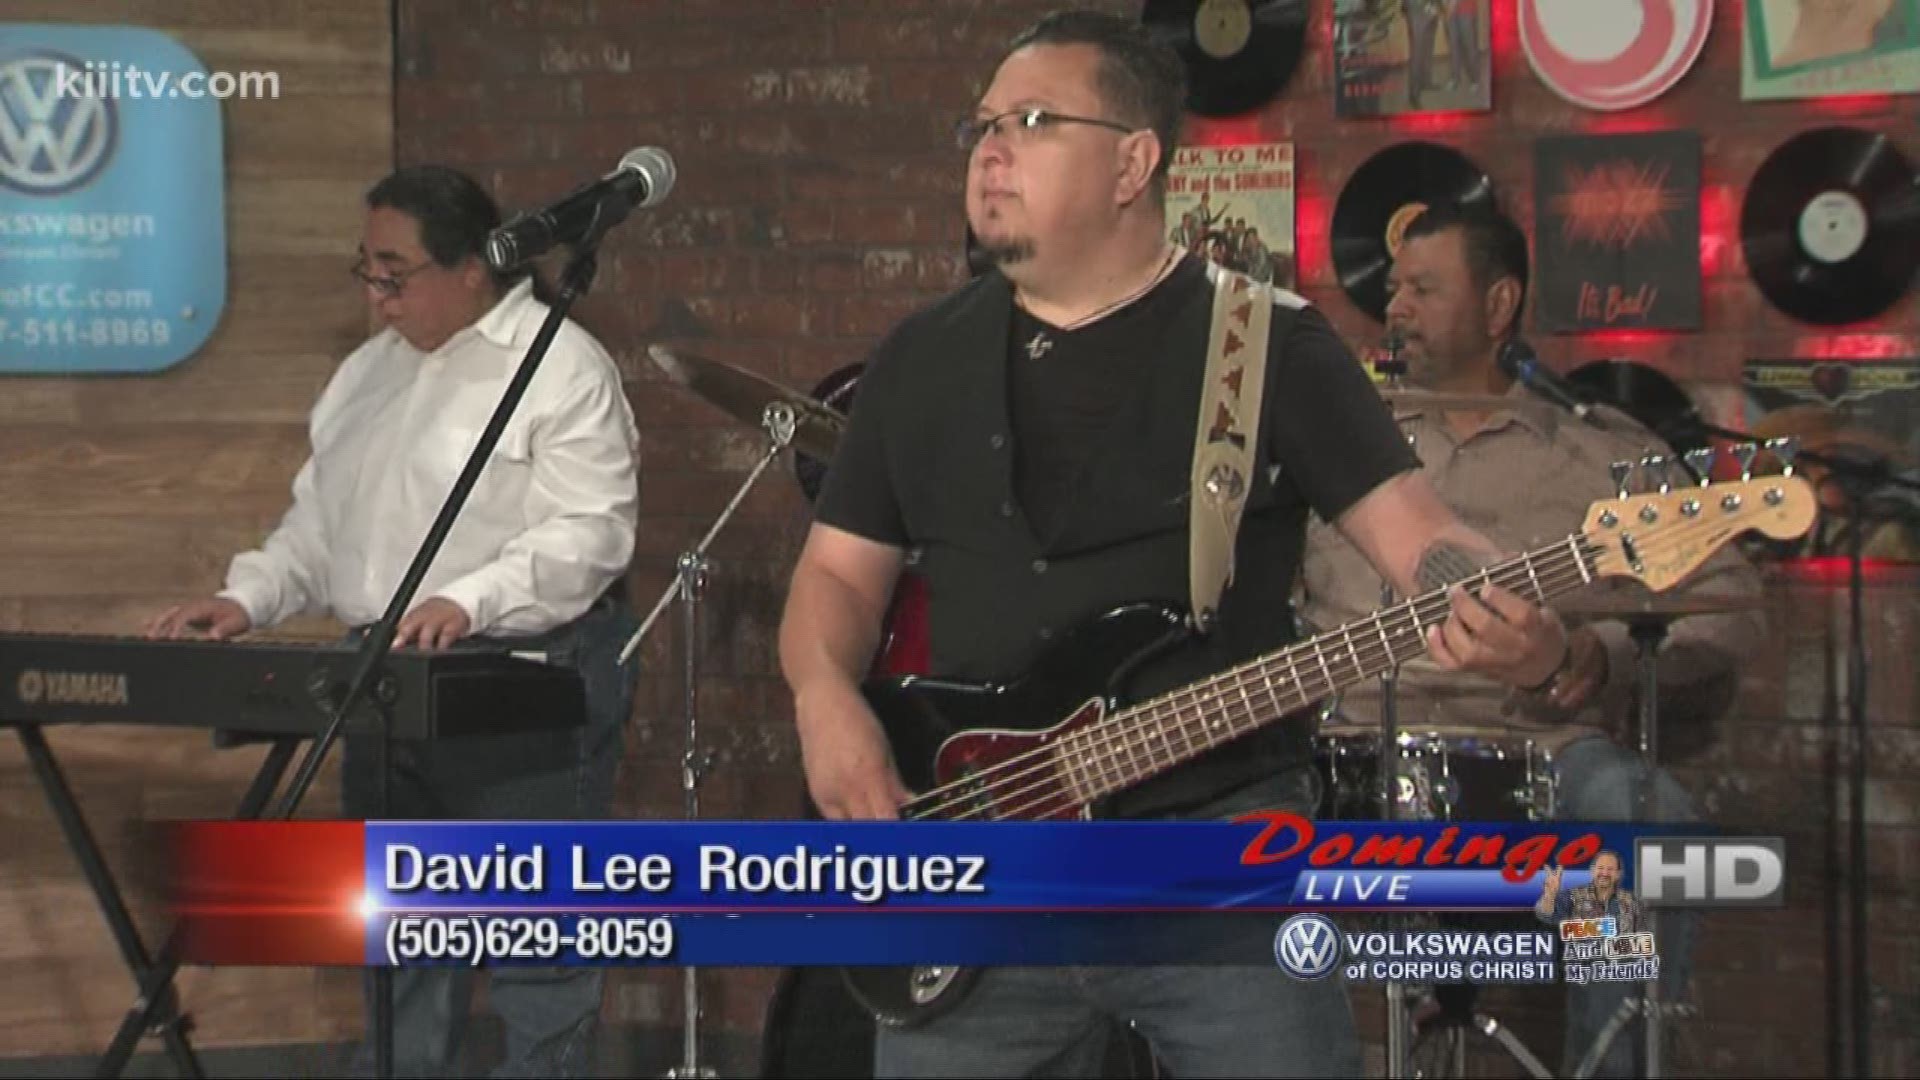 David Lee Rodriguez performing "El Regalo" on Domingo Live.